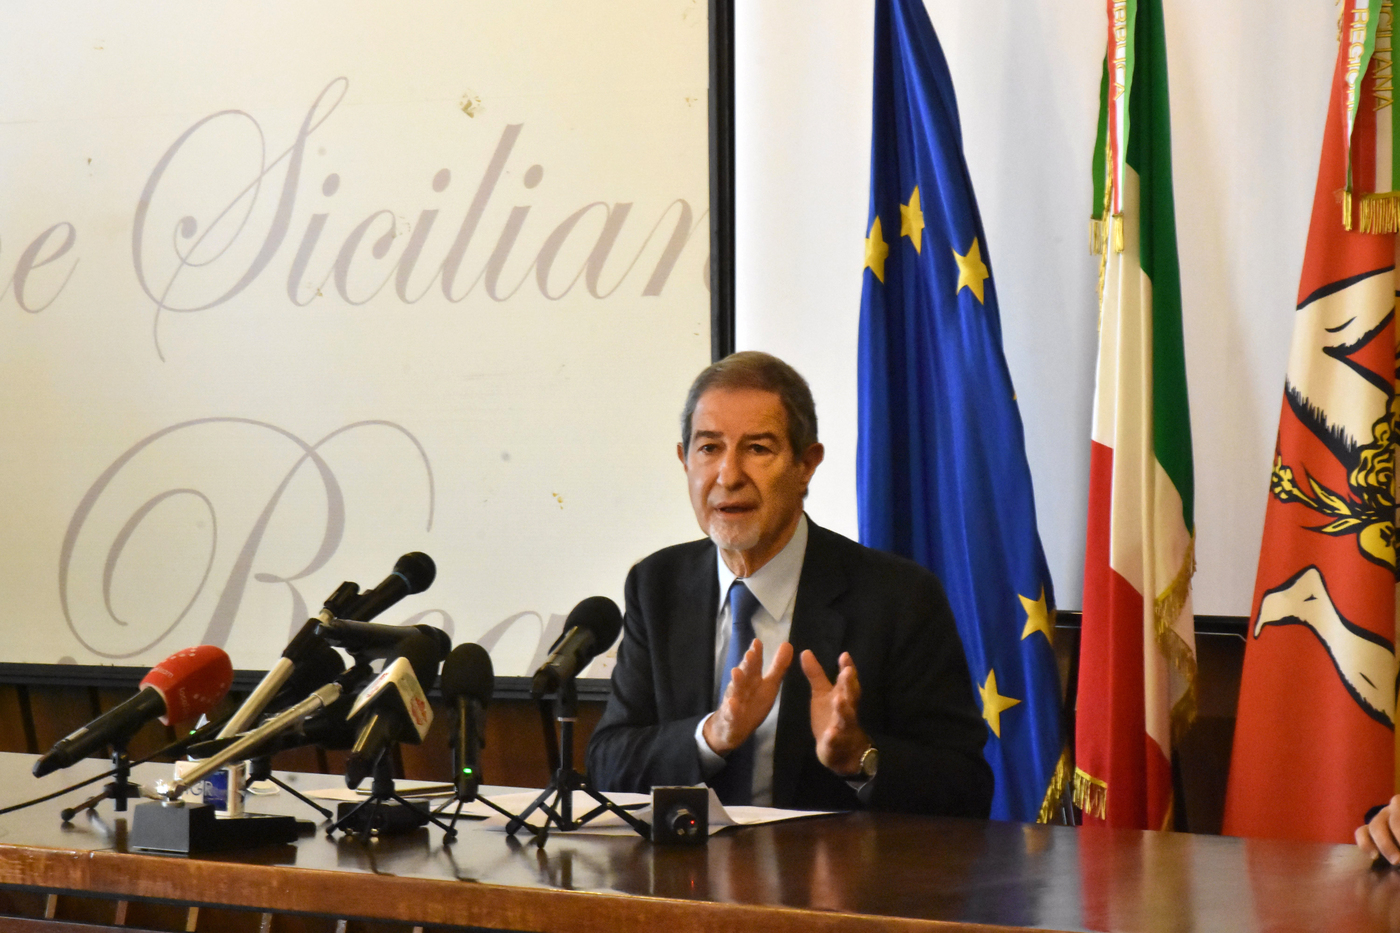 Scontro tra Sicilia e governo. Musumeci: “Stato ha competenza su migranti, ma Regione su sanità”